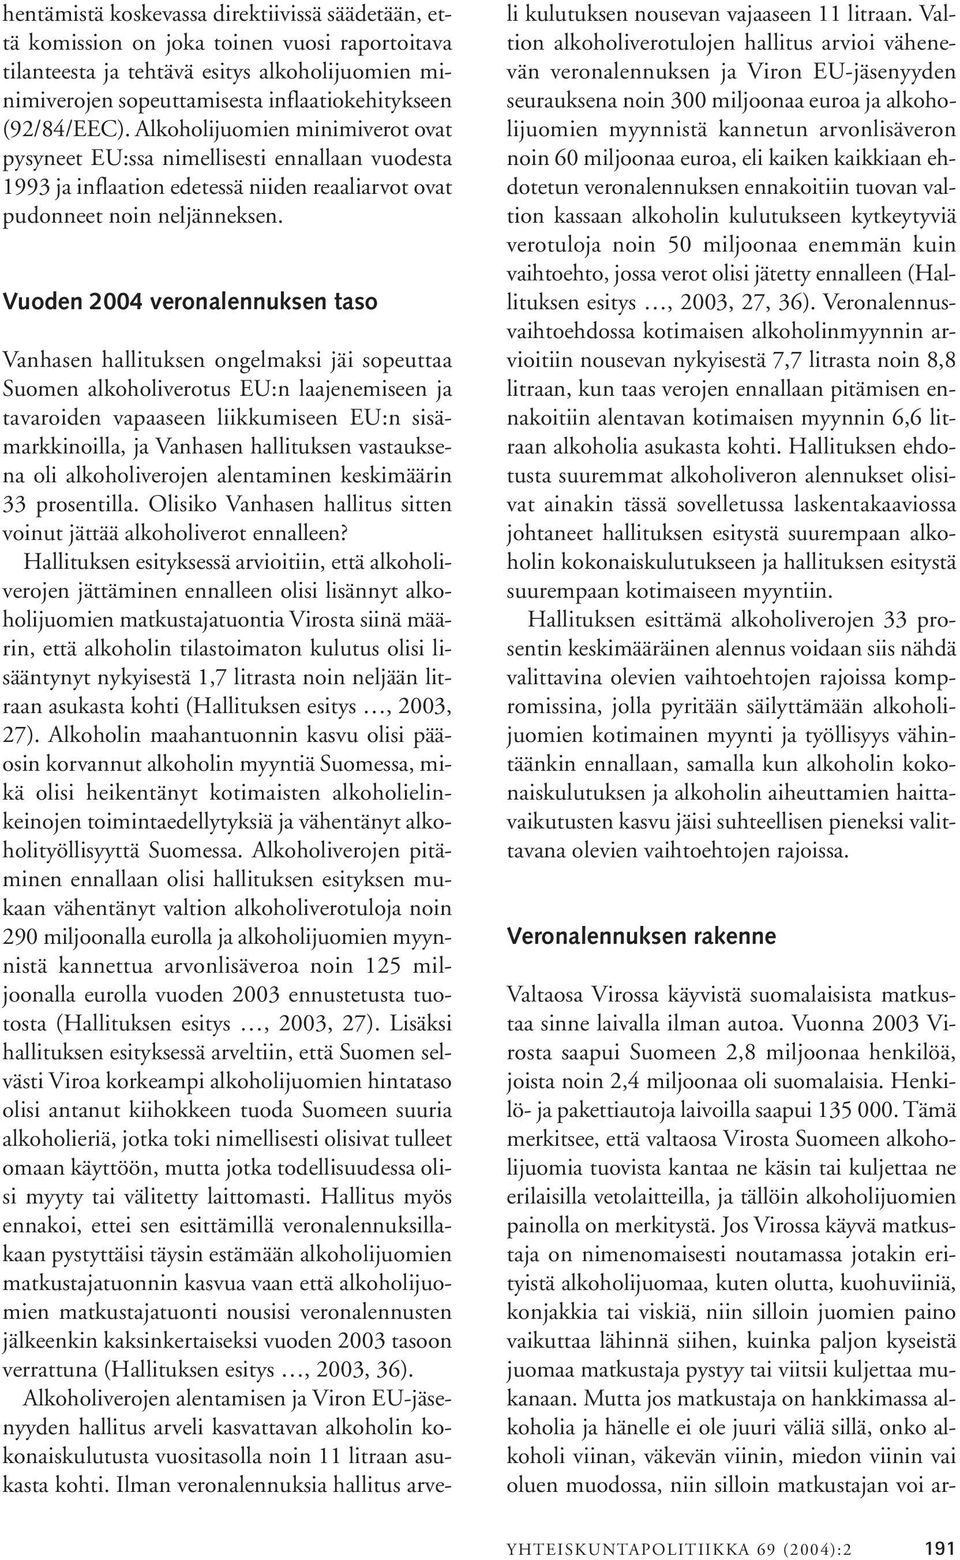 Vuoden 2004 veronalennuksen taso Vanhasen hallituksen ongelmaksi jäi sopeuttaa Suomen alkoholiverotus EU:n laajenemiseen ja tavaroiden vapaaseen liikkumiseen EU:n sisämarkkinoilla, ja Vanhasen